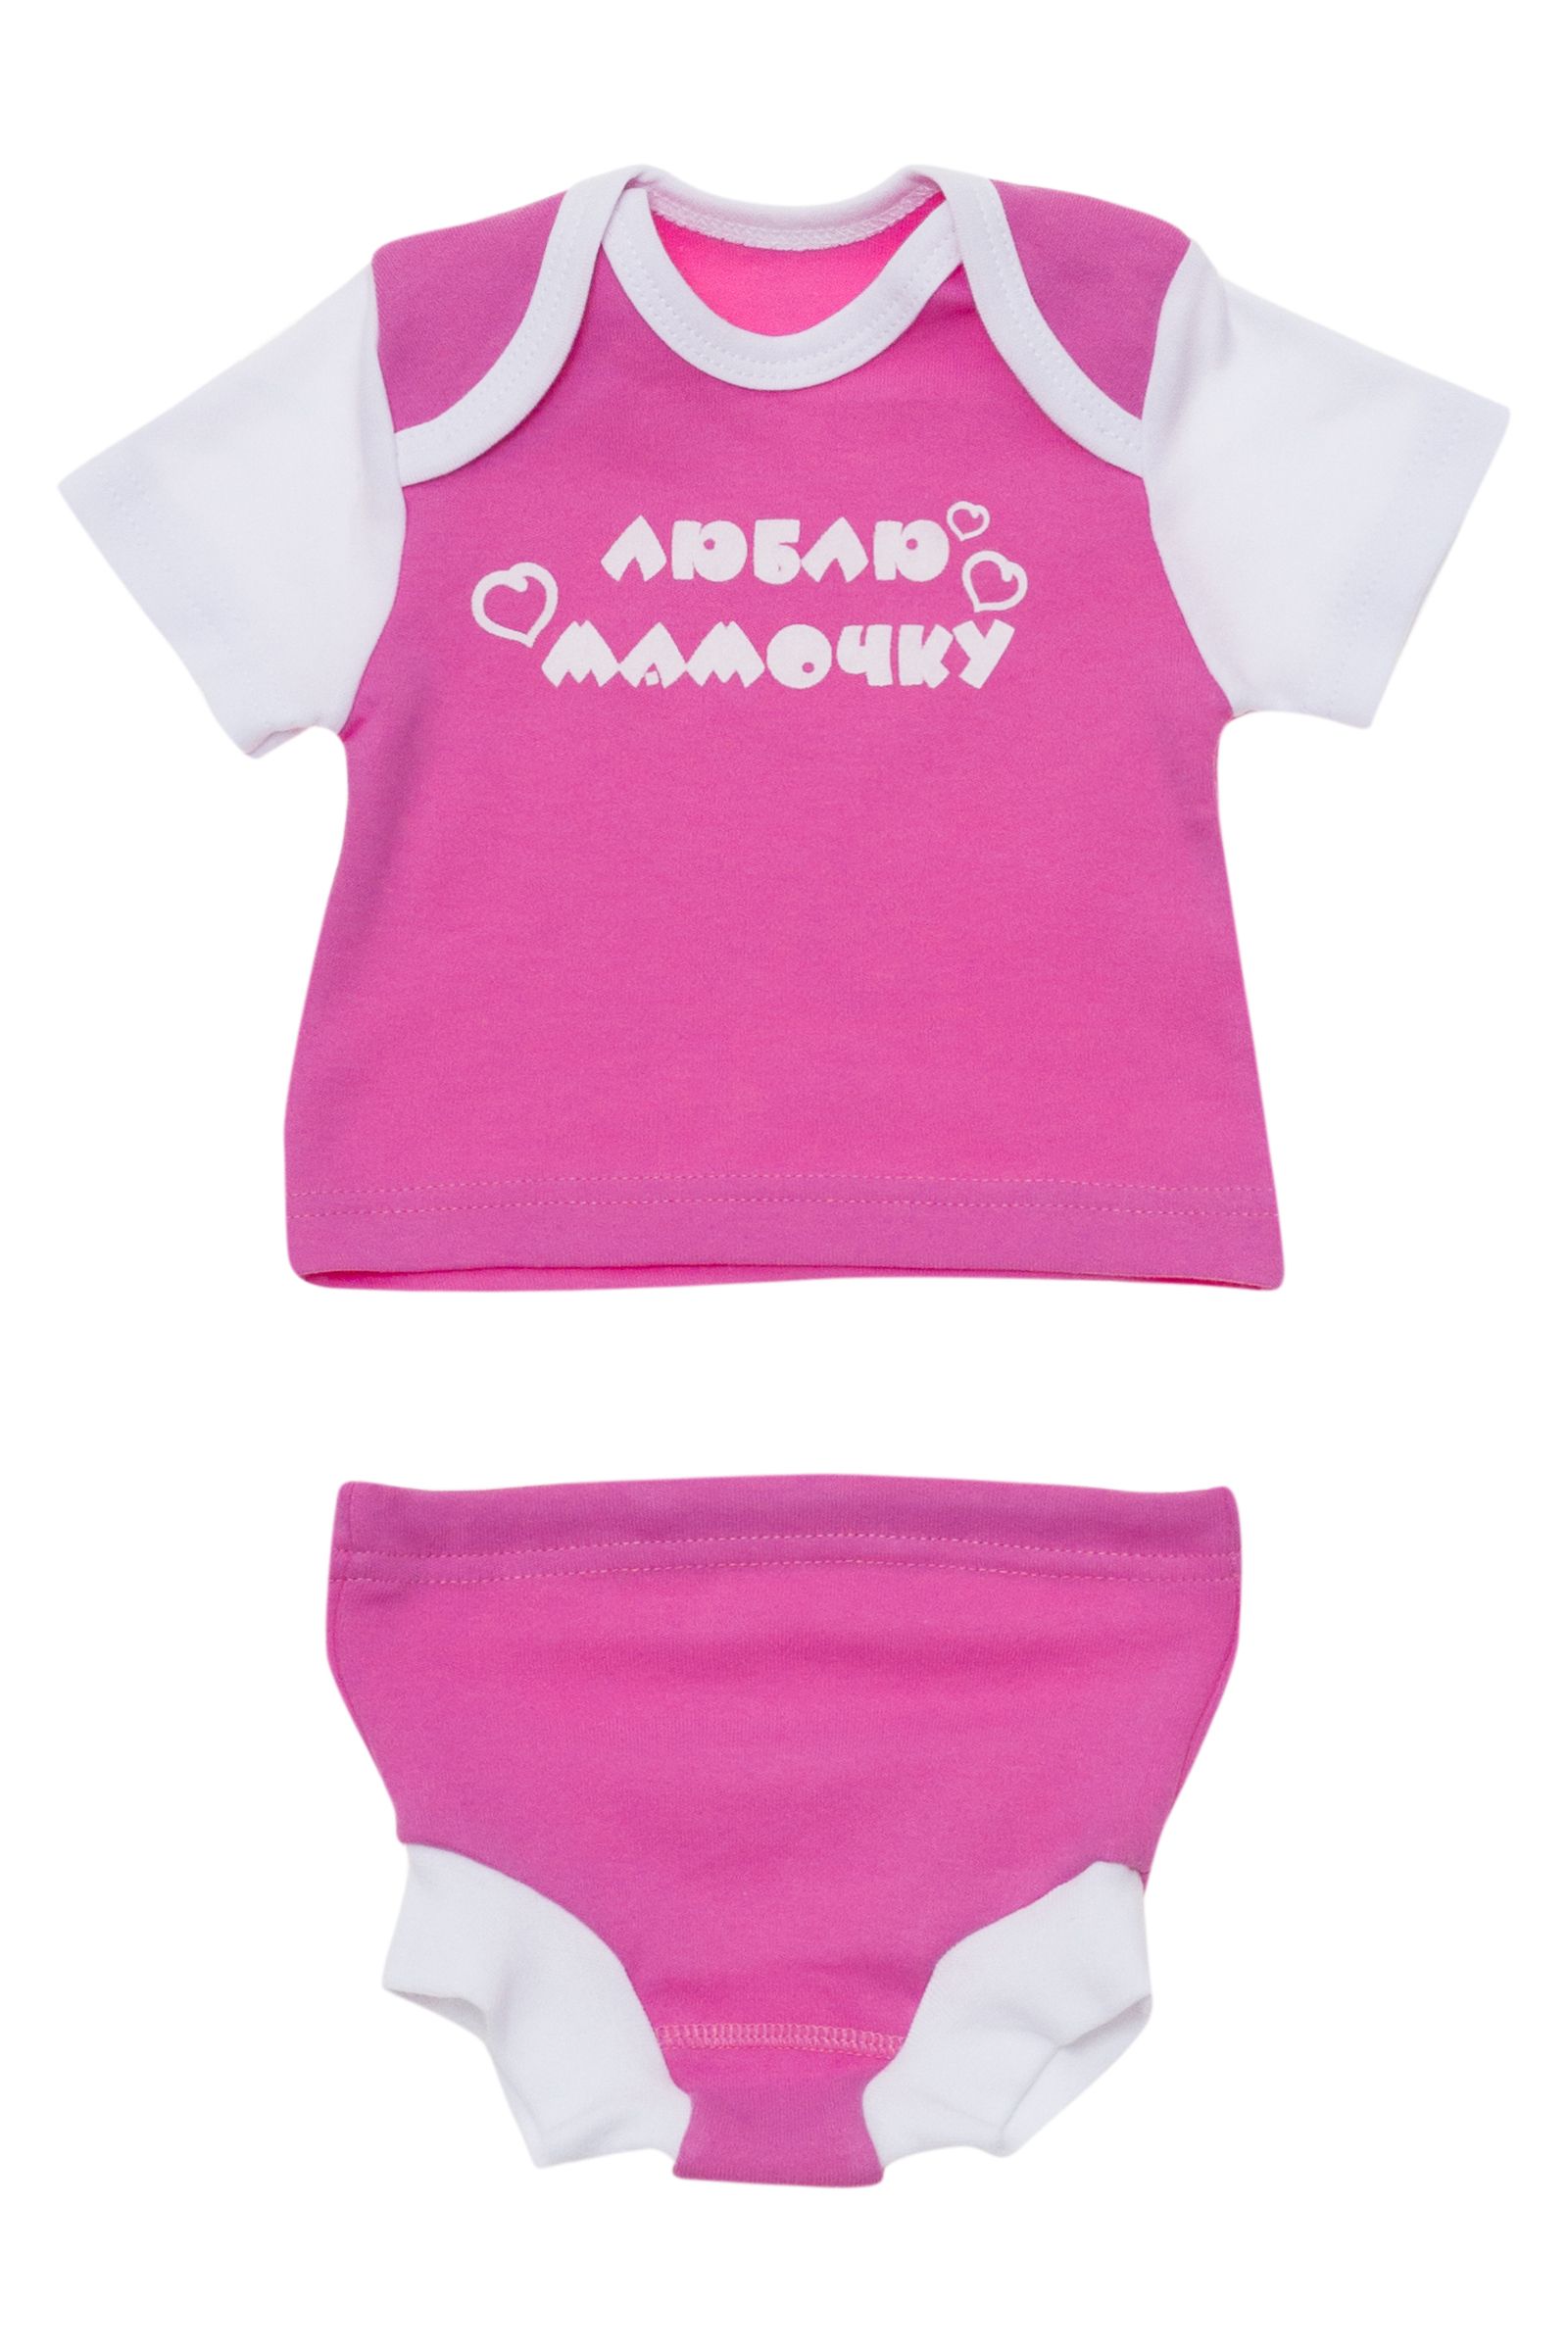 Комплект-ГР01-850 оптом от производителя детской одежды 'Алёна'